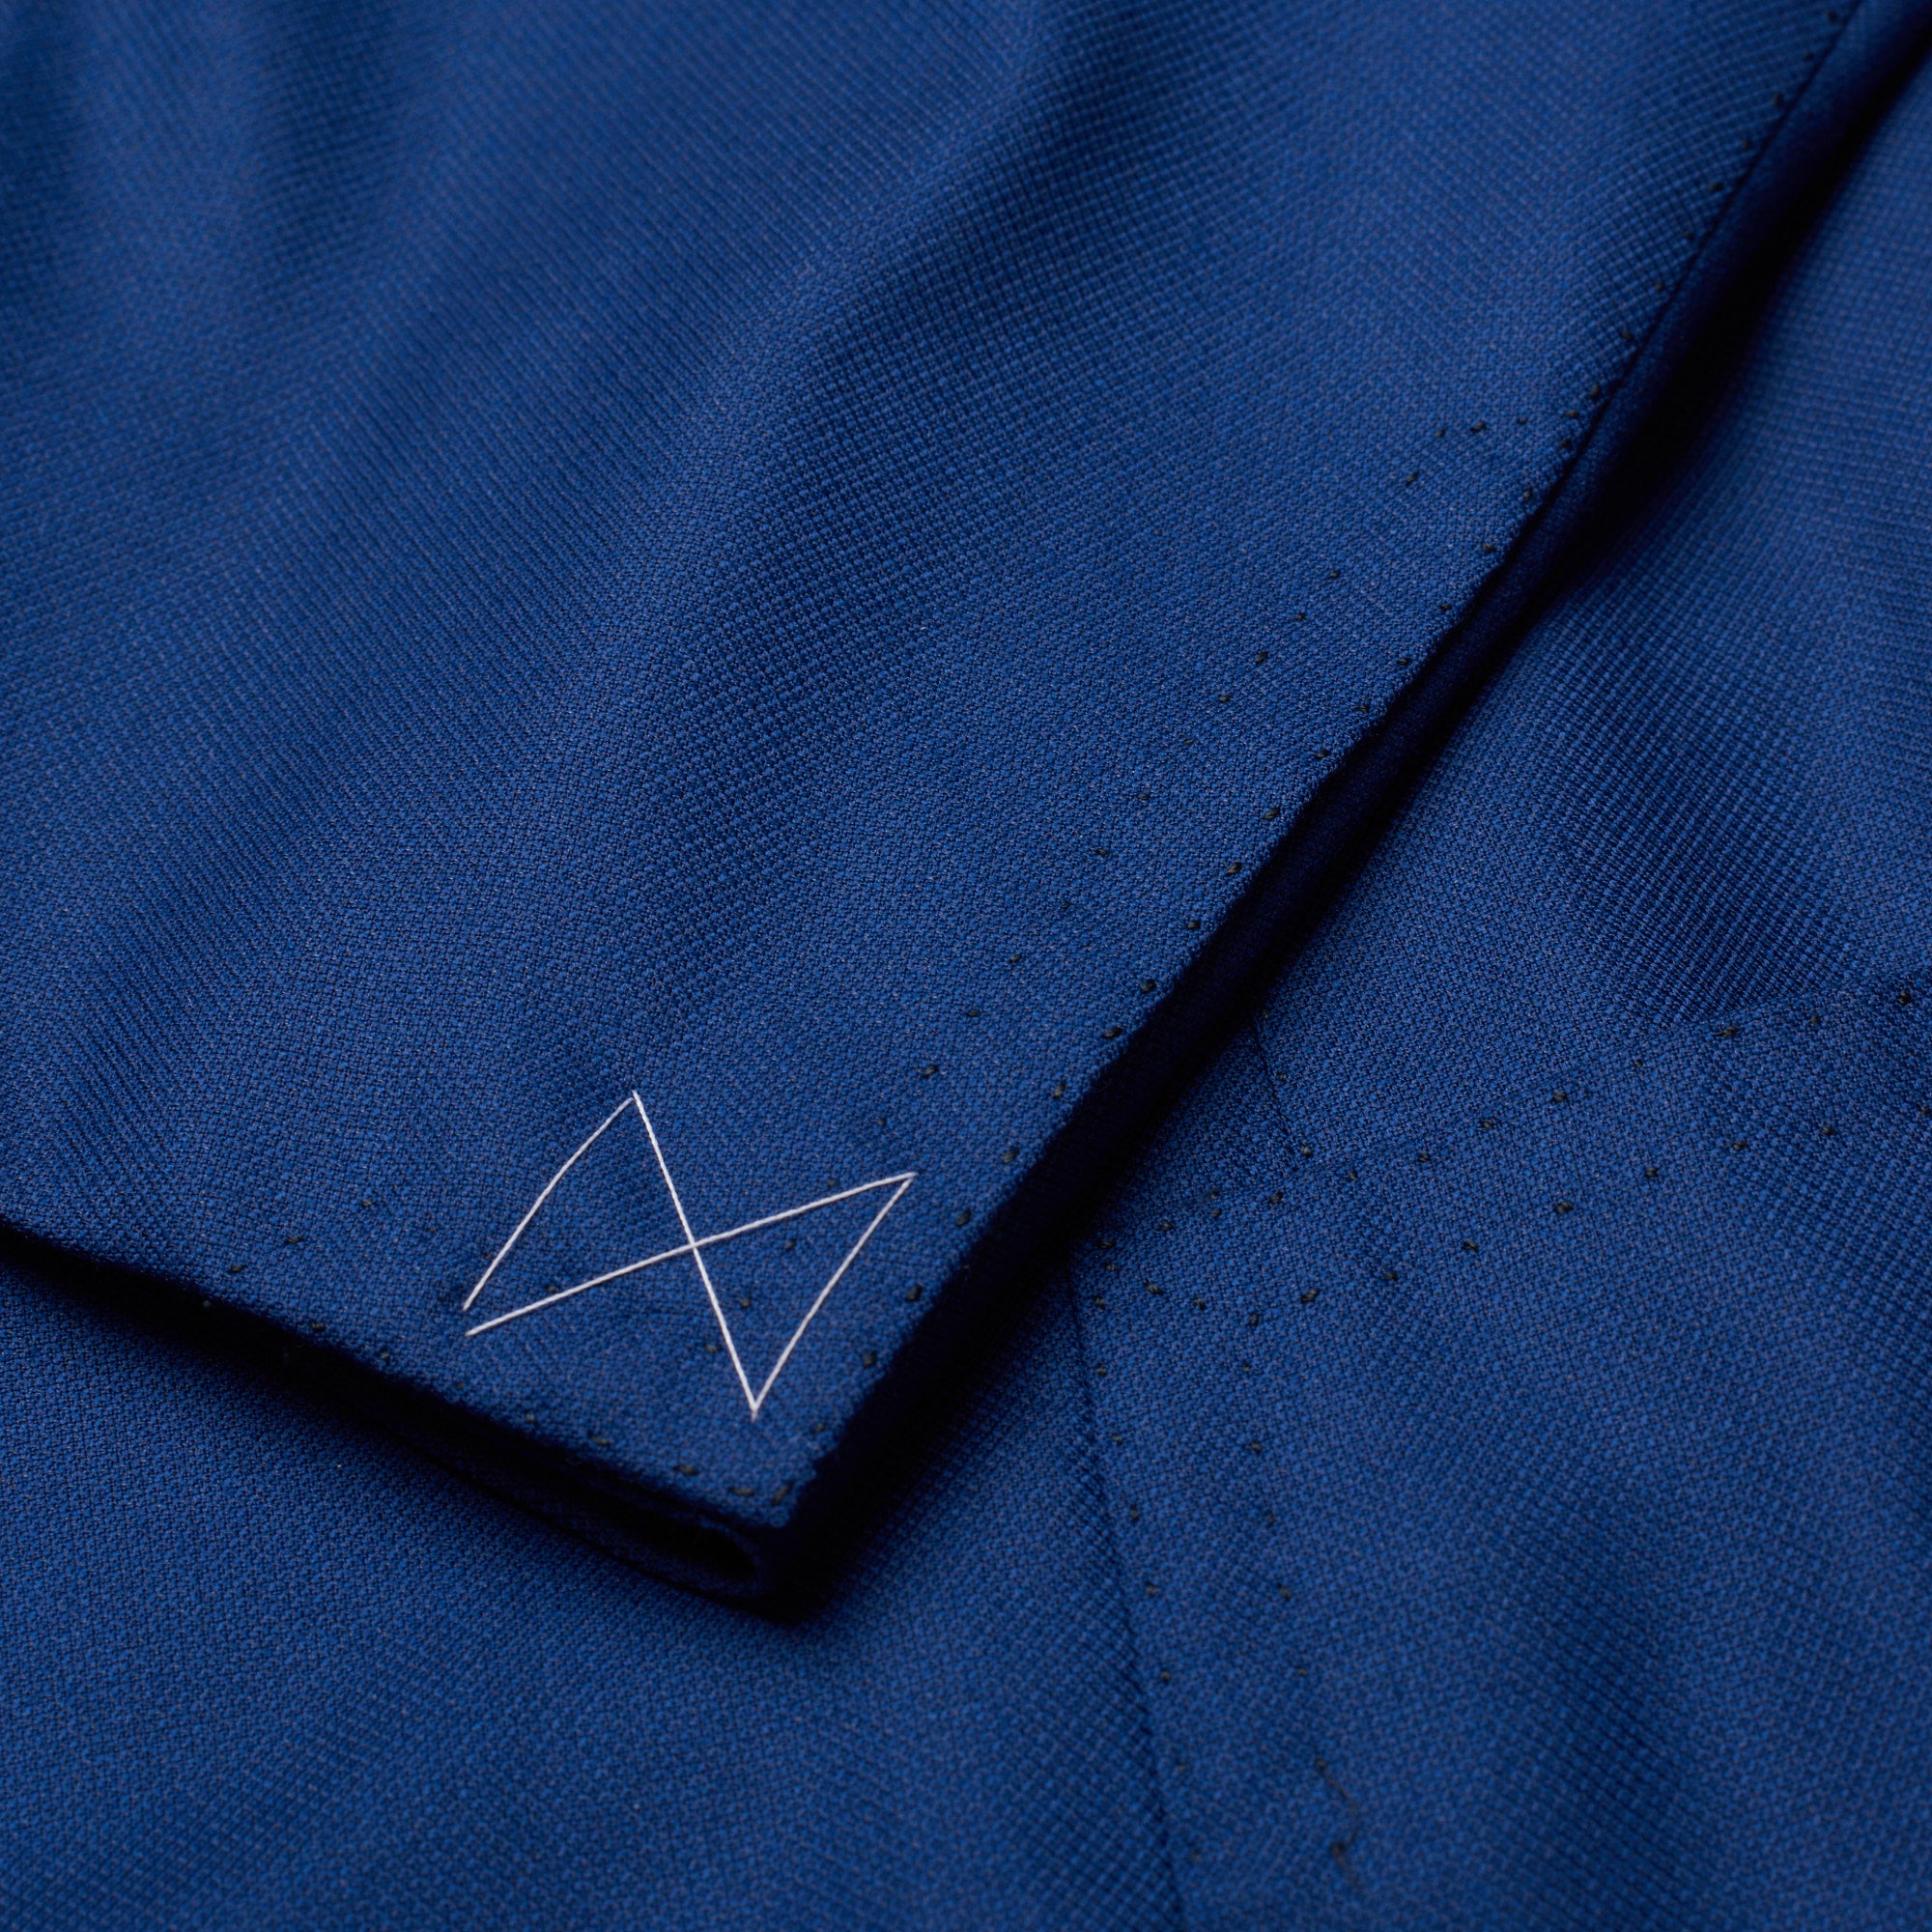 CESARE ATTOLINI Handmade Blue Silk-Wool Super 170's Jacket EU 48 NEW US 38 CESARE ATTOLINI